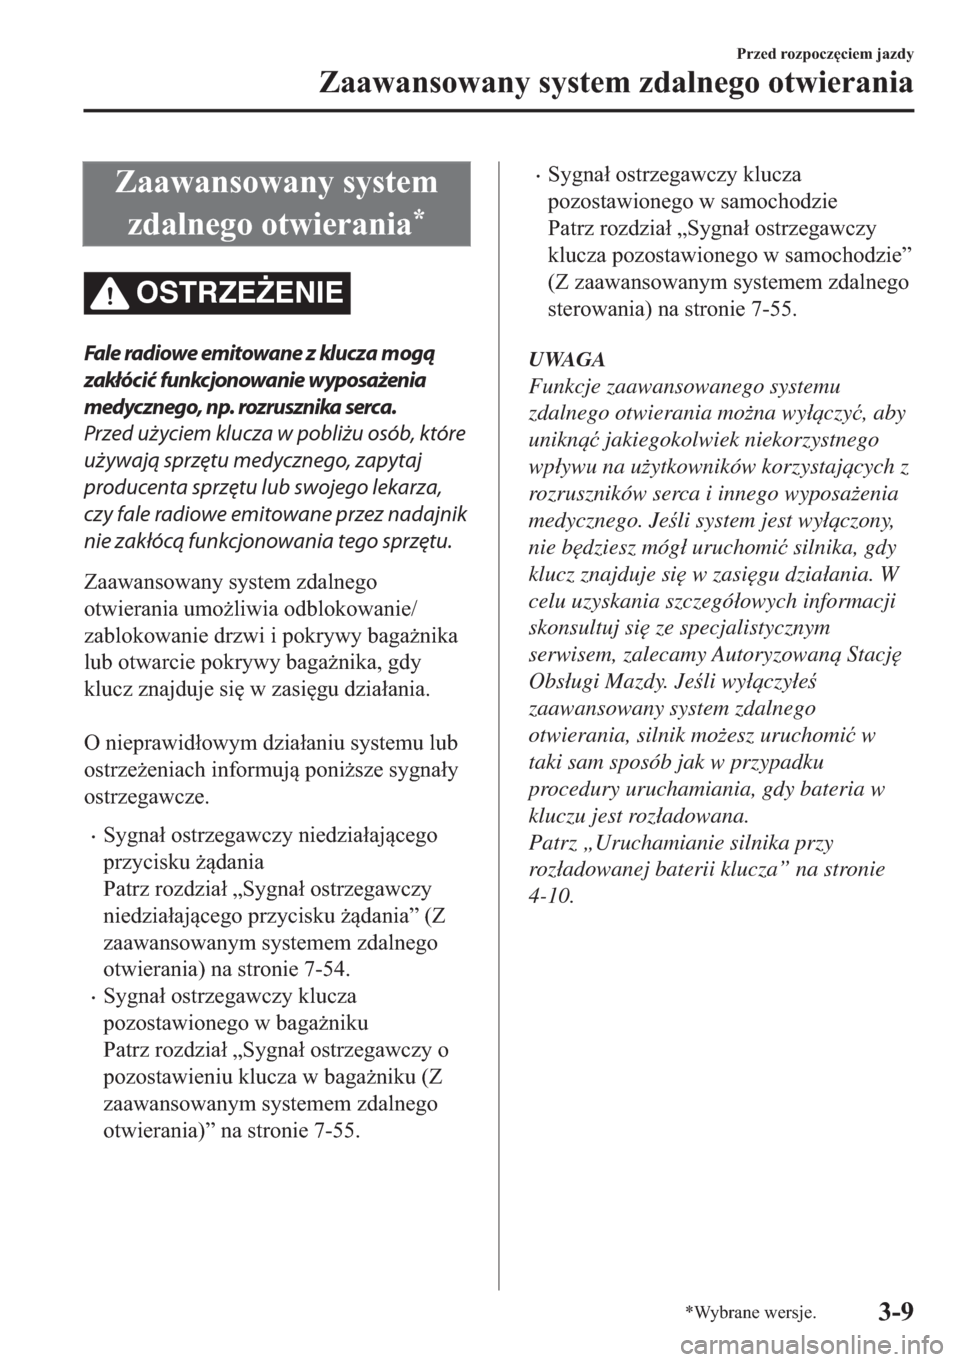 MAZDA MODEL 2 2019  Instrukcja Obsługi (in Polish) �=�D�D�Z�D�Q�V�R�Z�D�Q�\��V�\�V�W�H�P
�]�G�D�O�Q�H�J�R��R�W�Z�L�H�U�D�Q�L�D
�
OSTRZE)ENIE
Fale radiowe emitowane z klucza mogą
zakłócić funkcjonowanie wyposażenia
medycznego, np. rozrusznika 